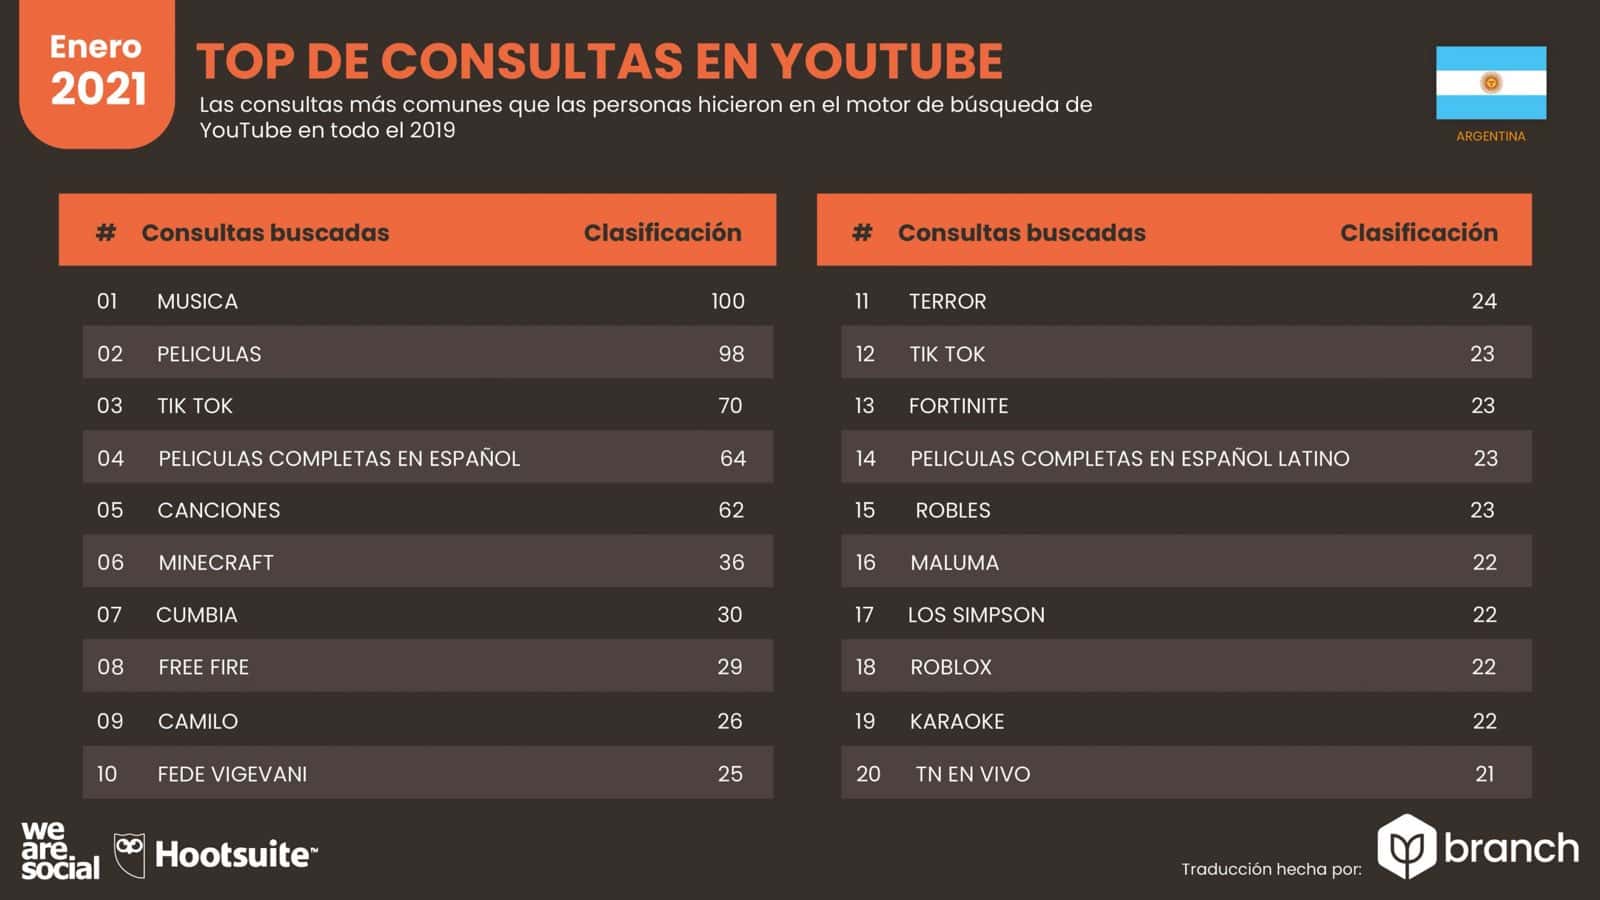 grafico-top-de-consultas-en-youtube-argentina-2020-2021